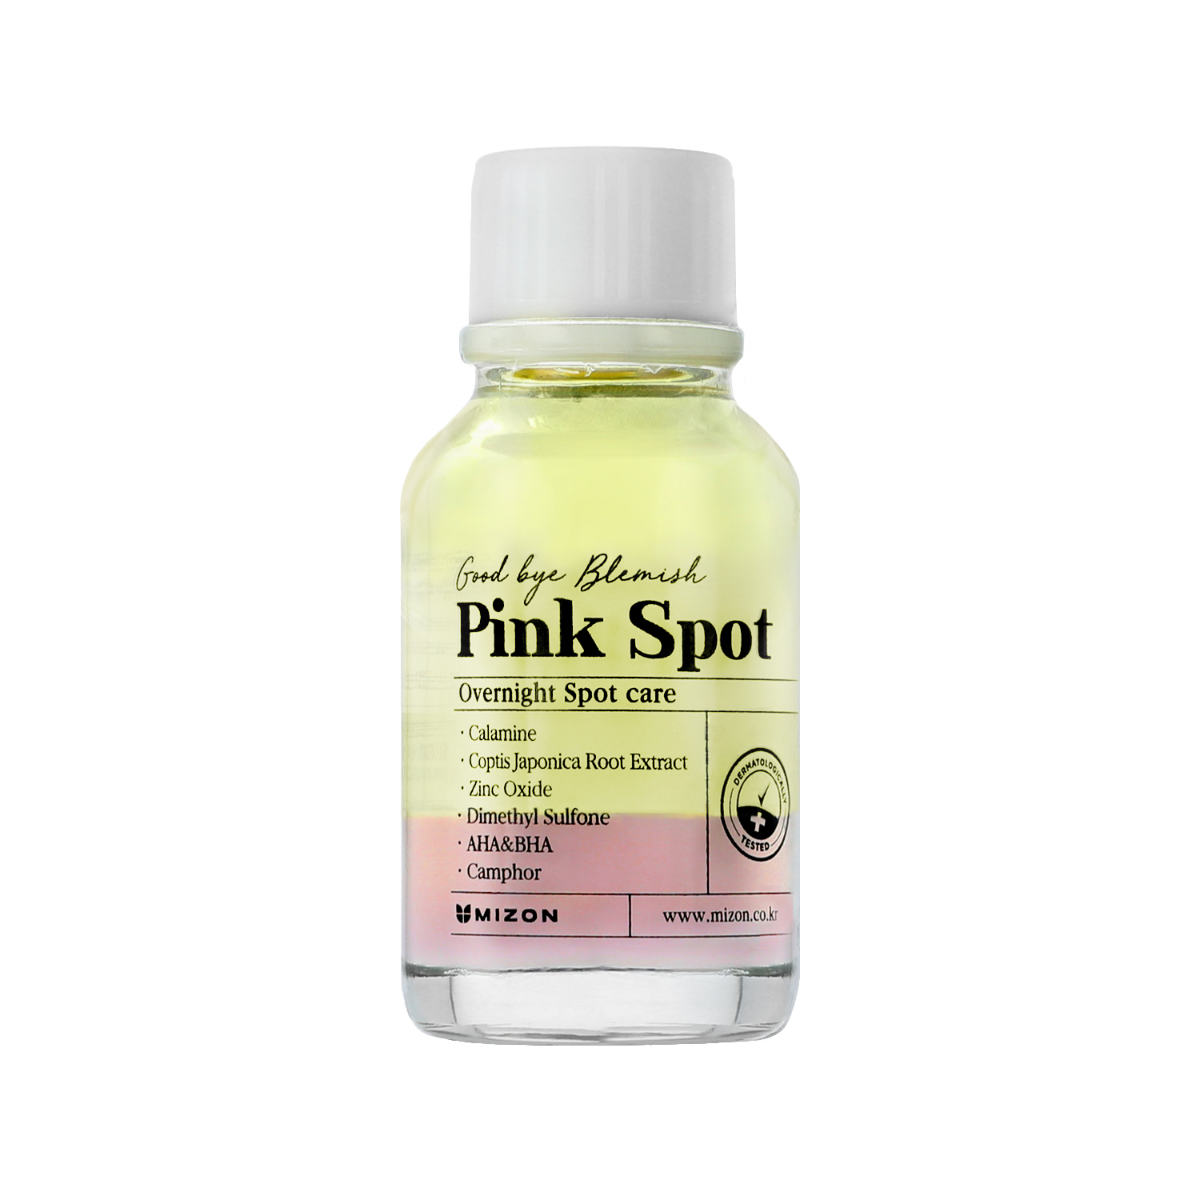 Mizon Good Bye Blemish Pink Spot toner 19 ml Mizon